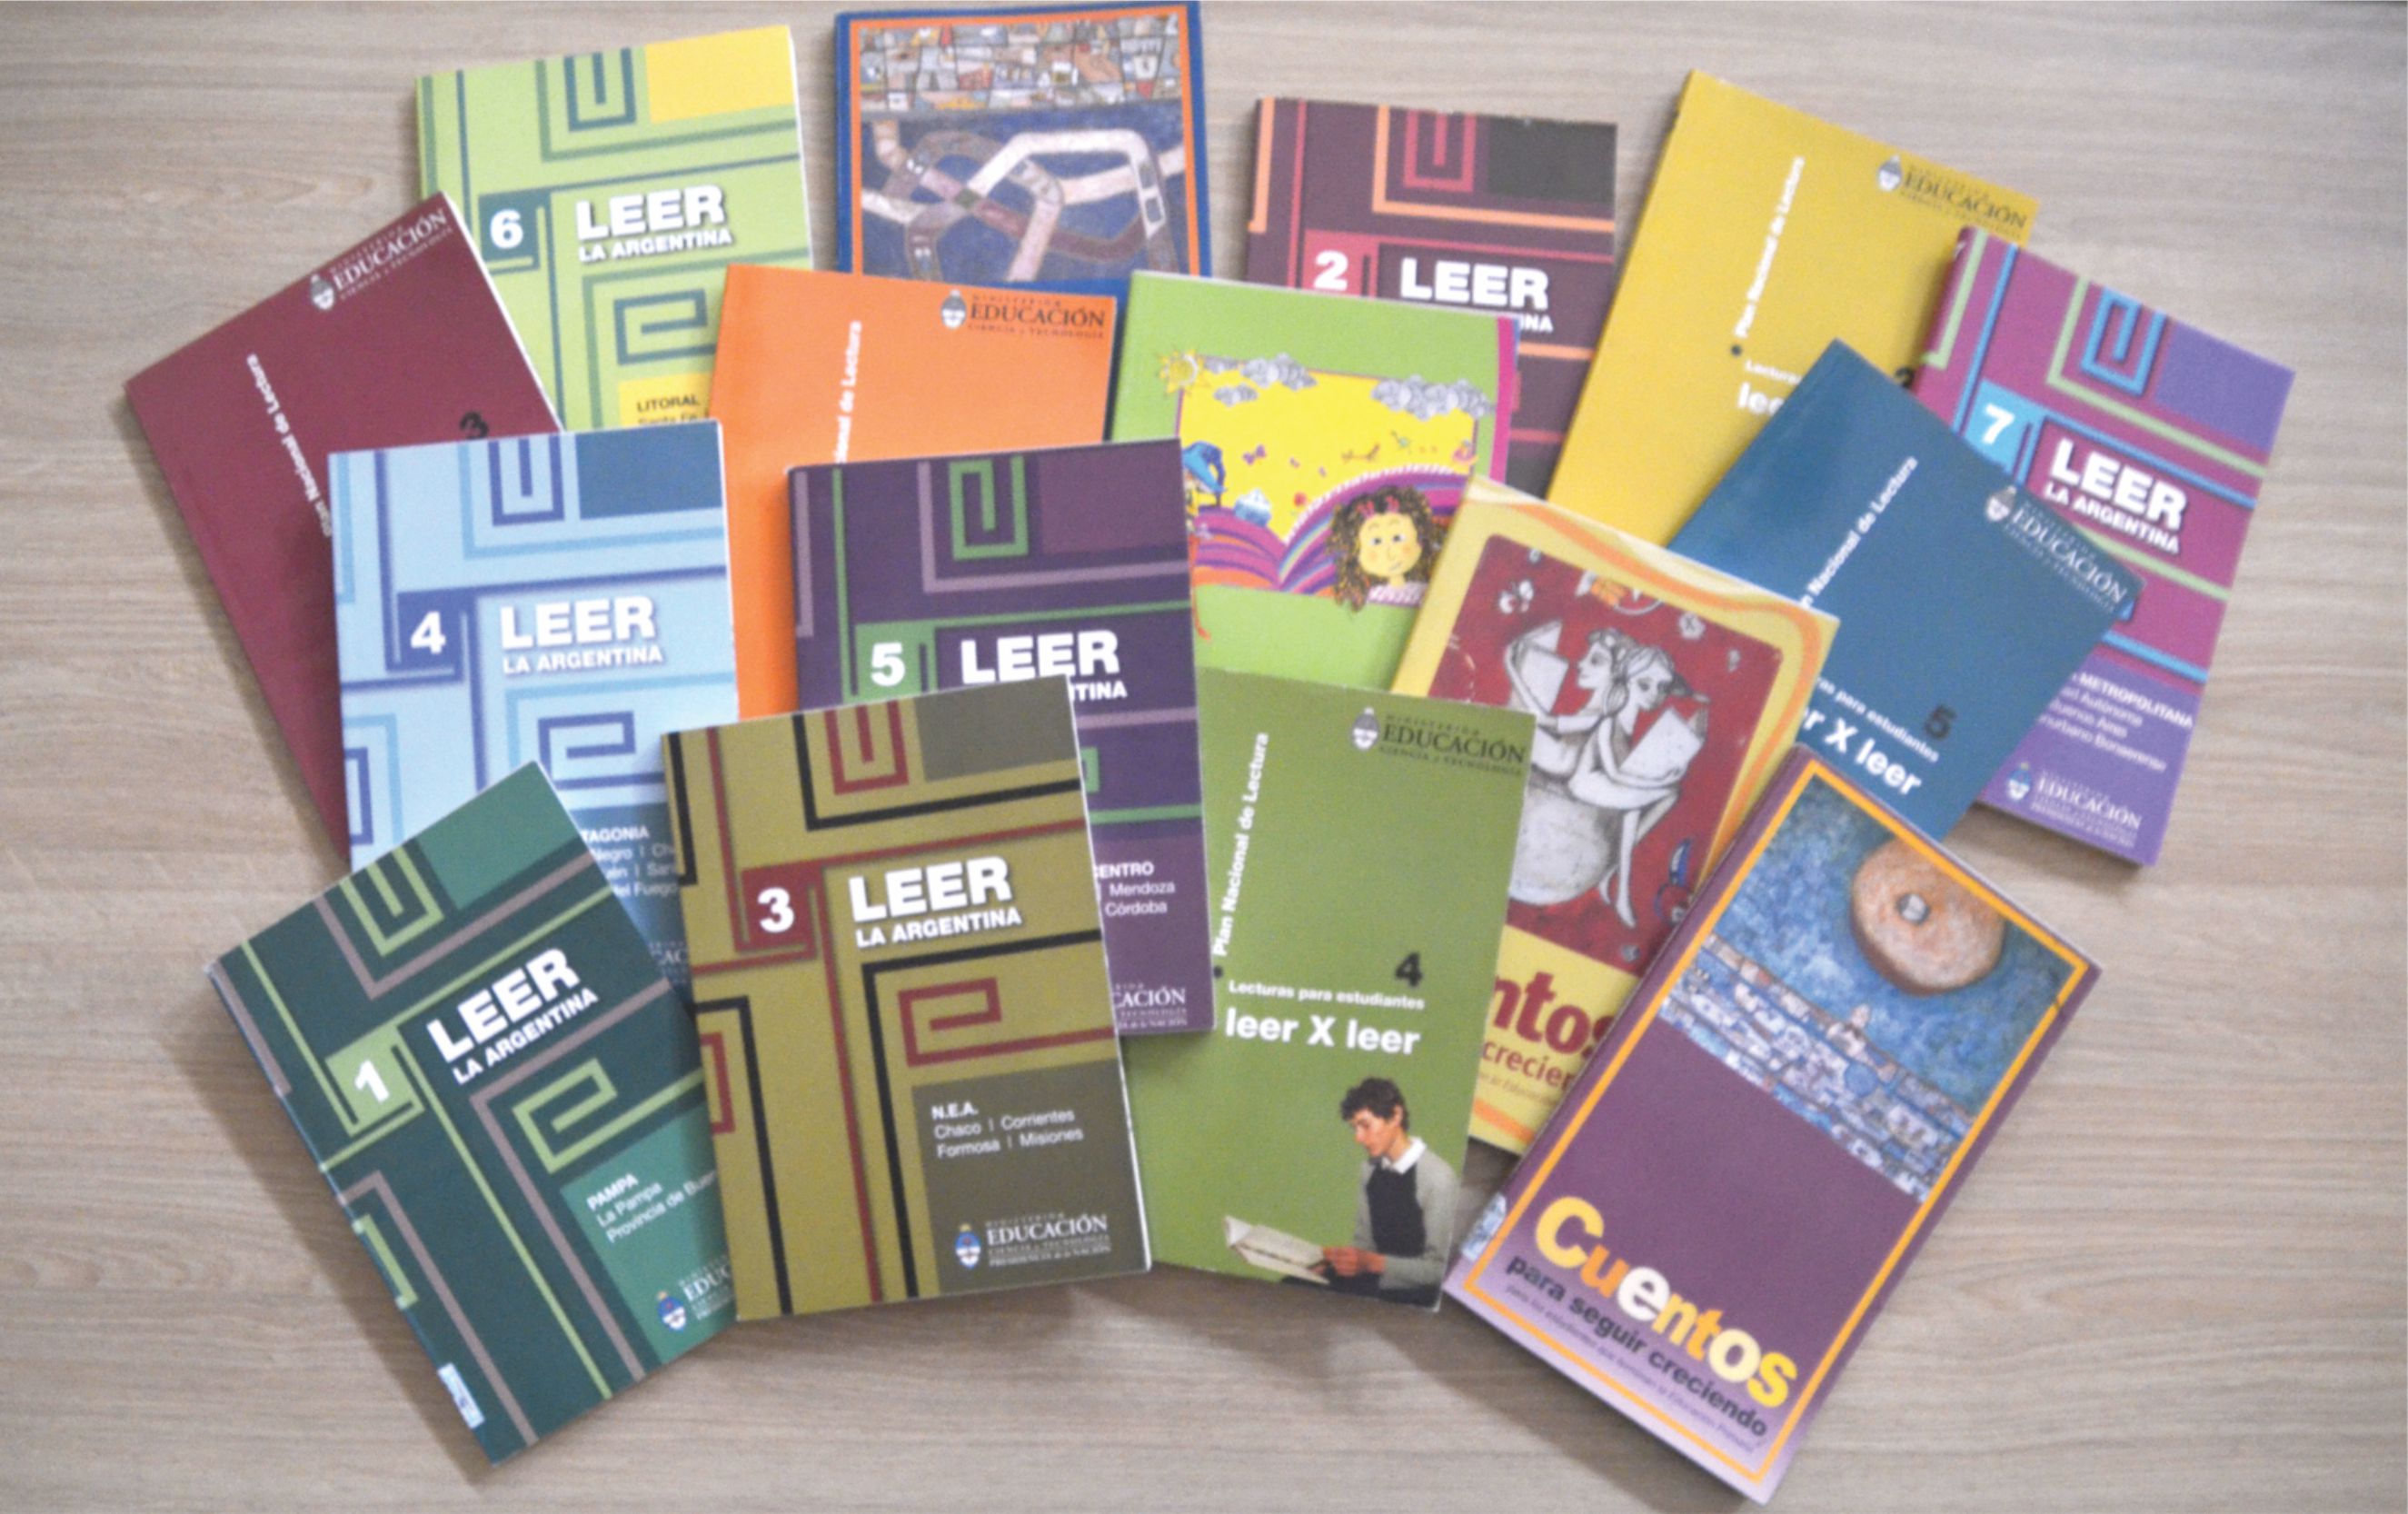 Co-ediciones junto al Plan Nacional de Lecturas